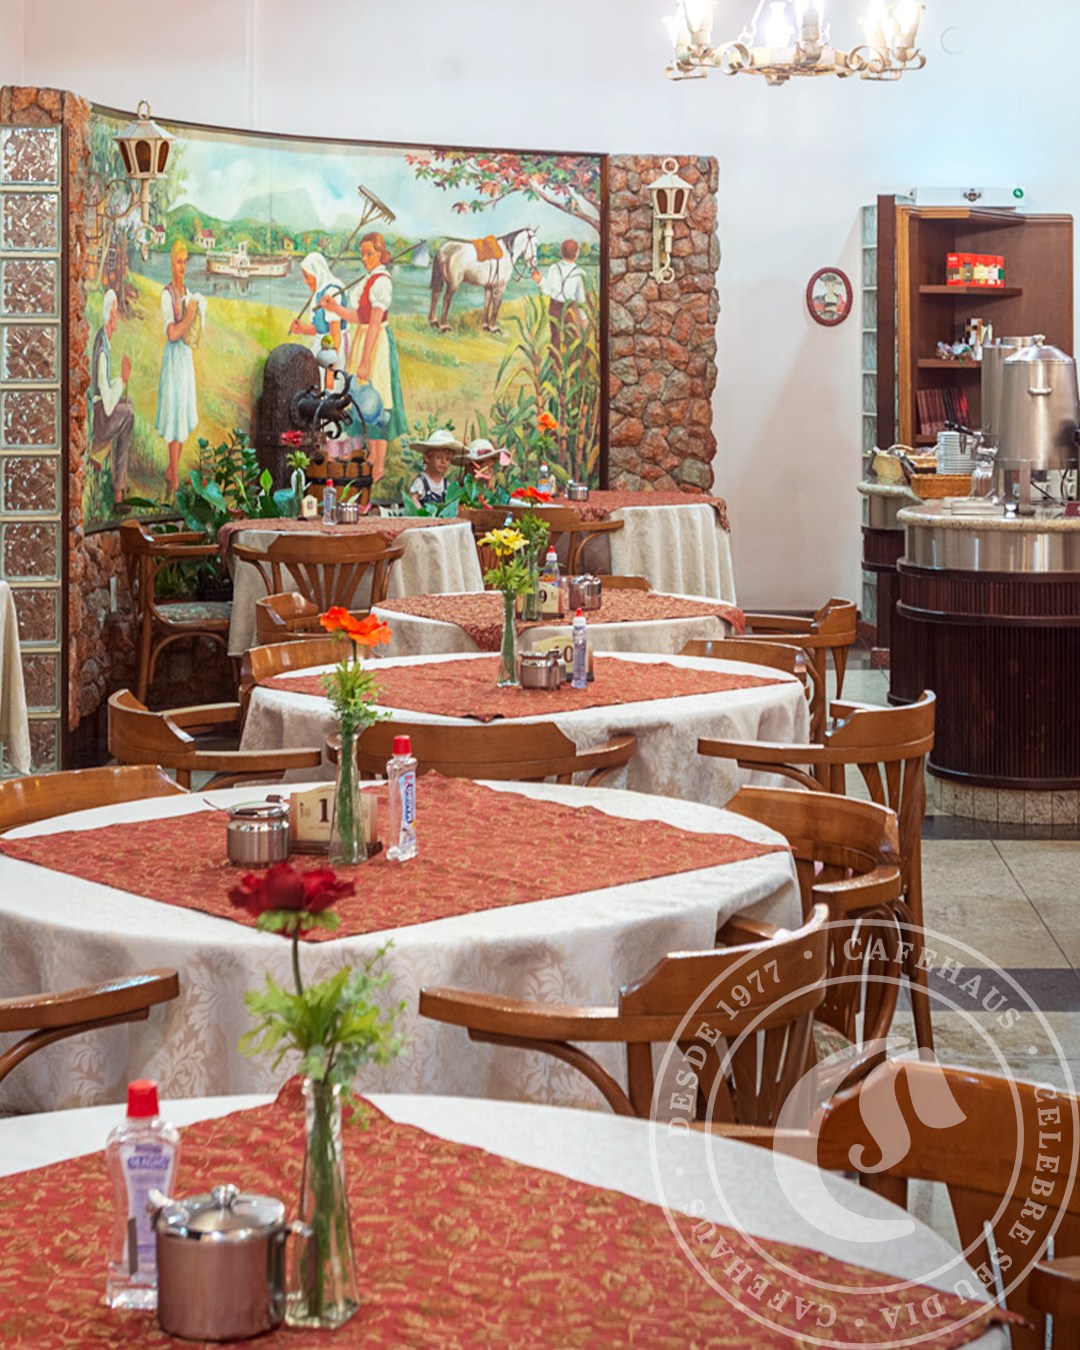 Desde 1977 Blumenau oferece café colonial no Cafehaus Glória